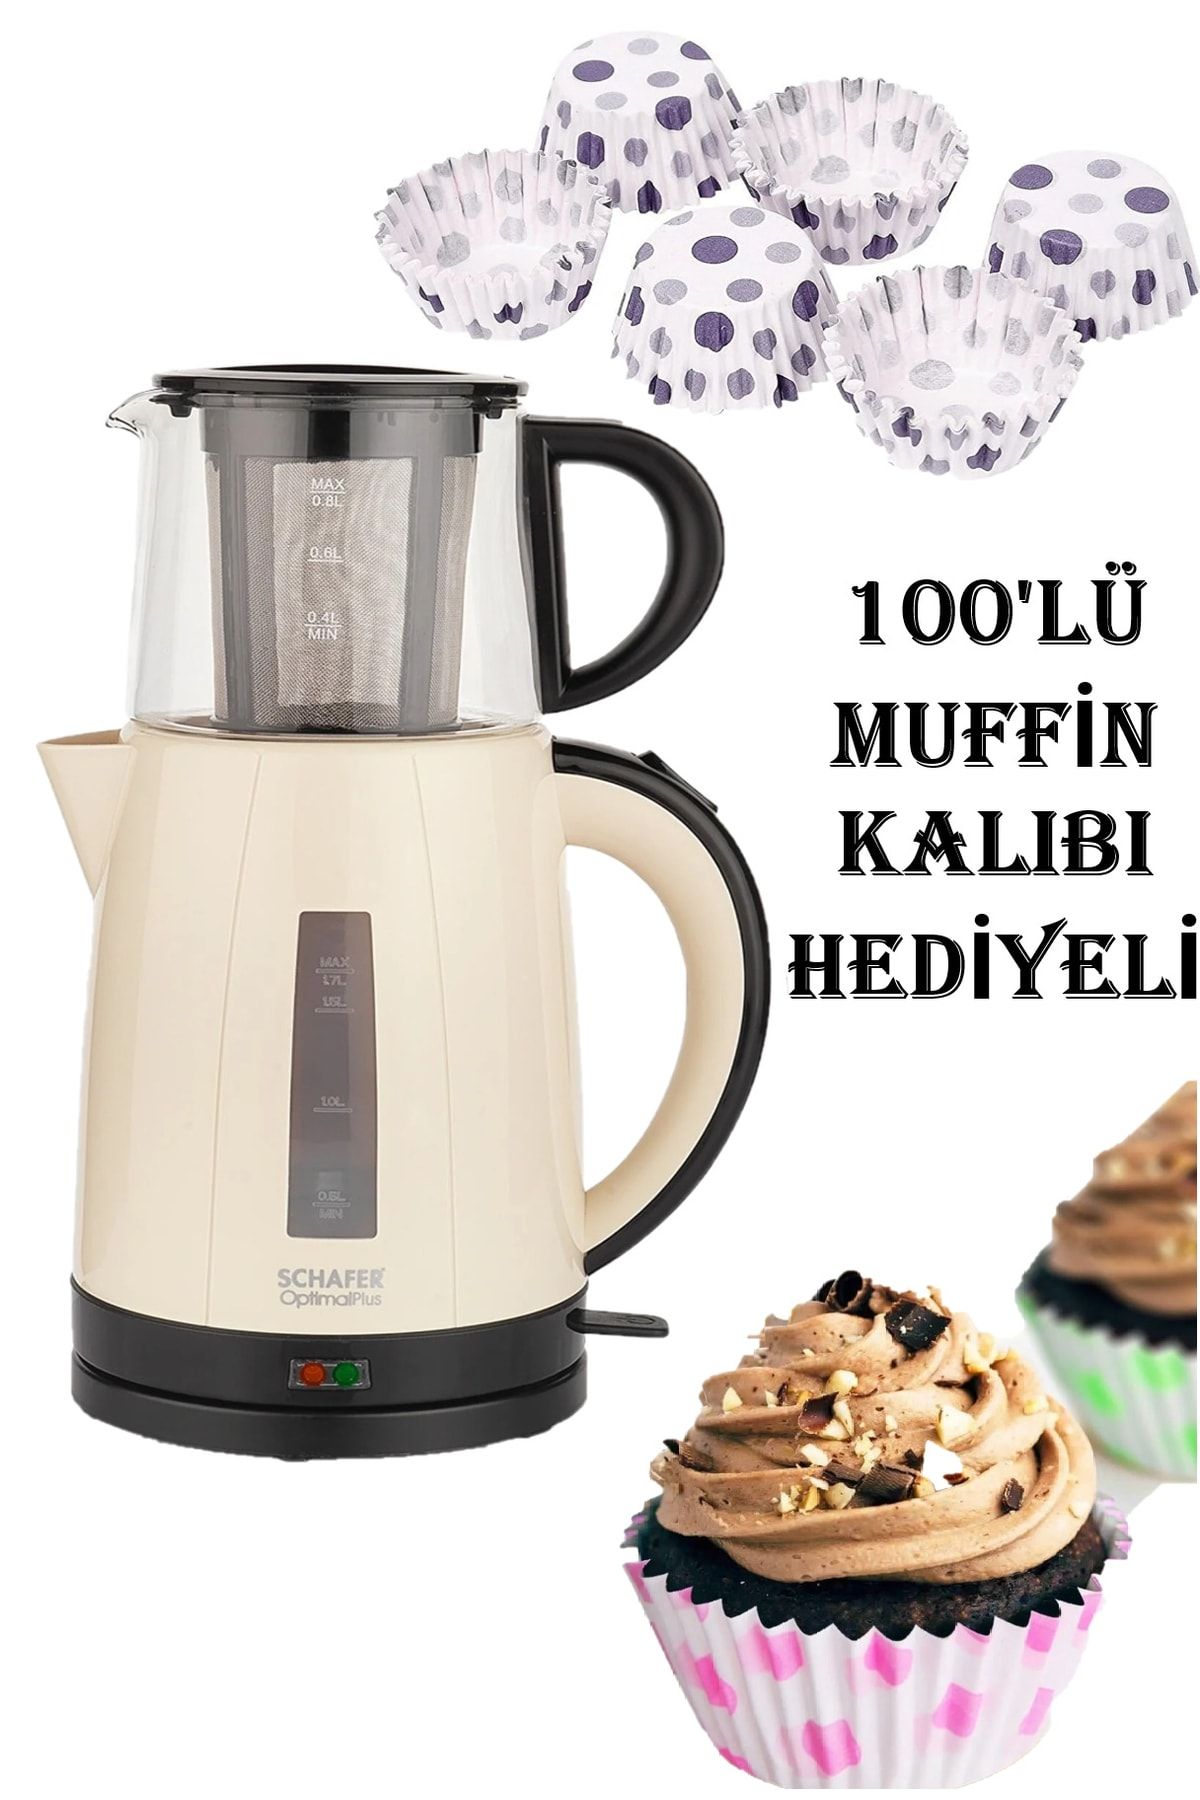 Schafer Krem Optimal Plus Elektrikli Çay Makinesi 100lü Muffin Kalıbı Anneler Günü Özel